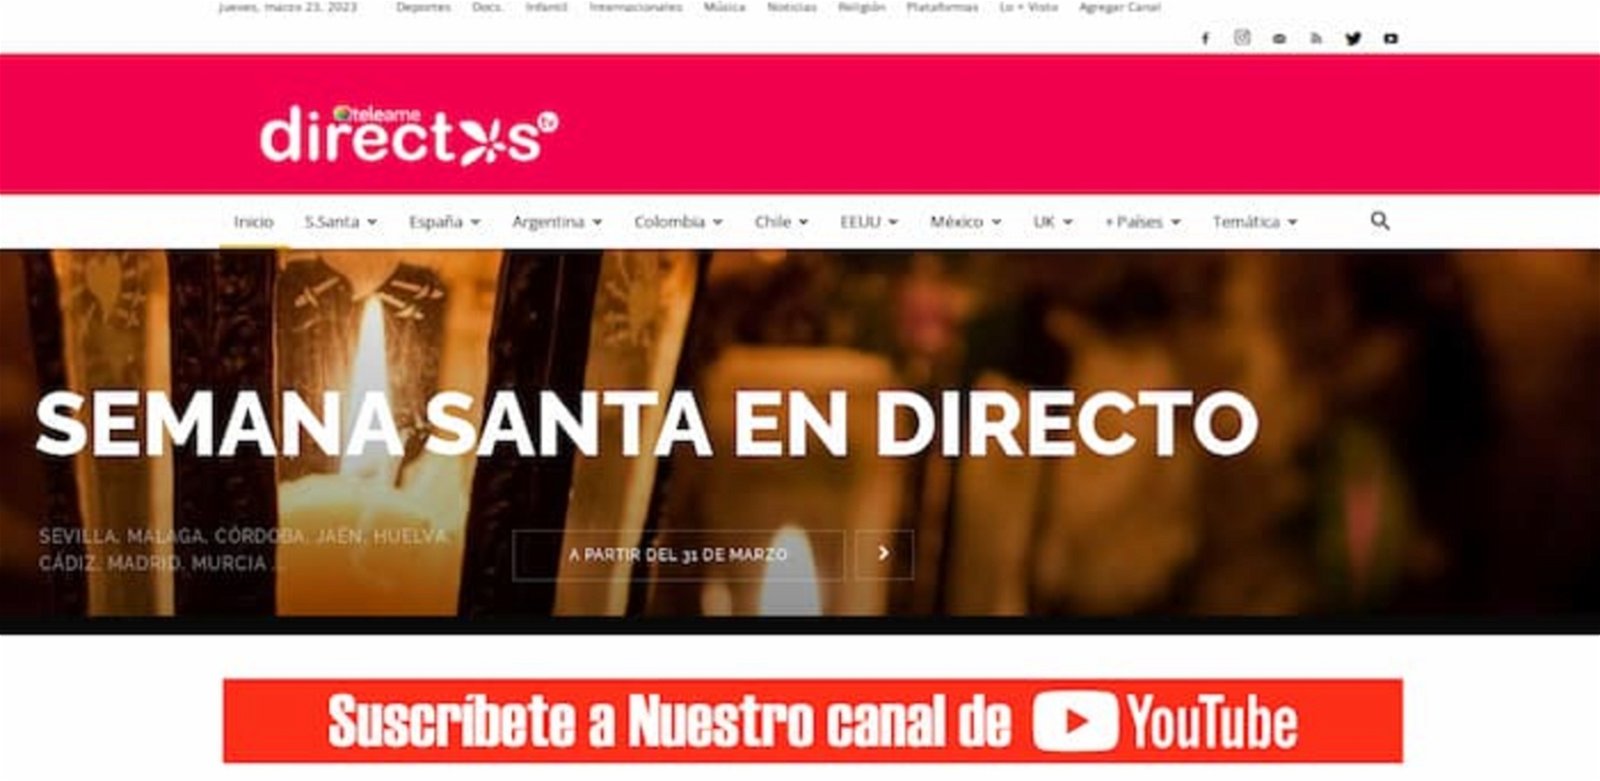 Con la web de Teleame no solo podrás disfrutar de muchos canales españoles, sino también algunas transmisiones de YouTube